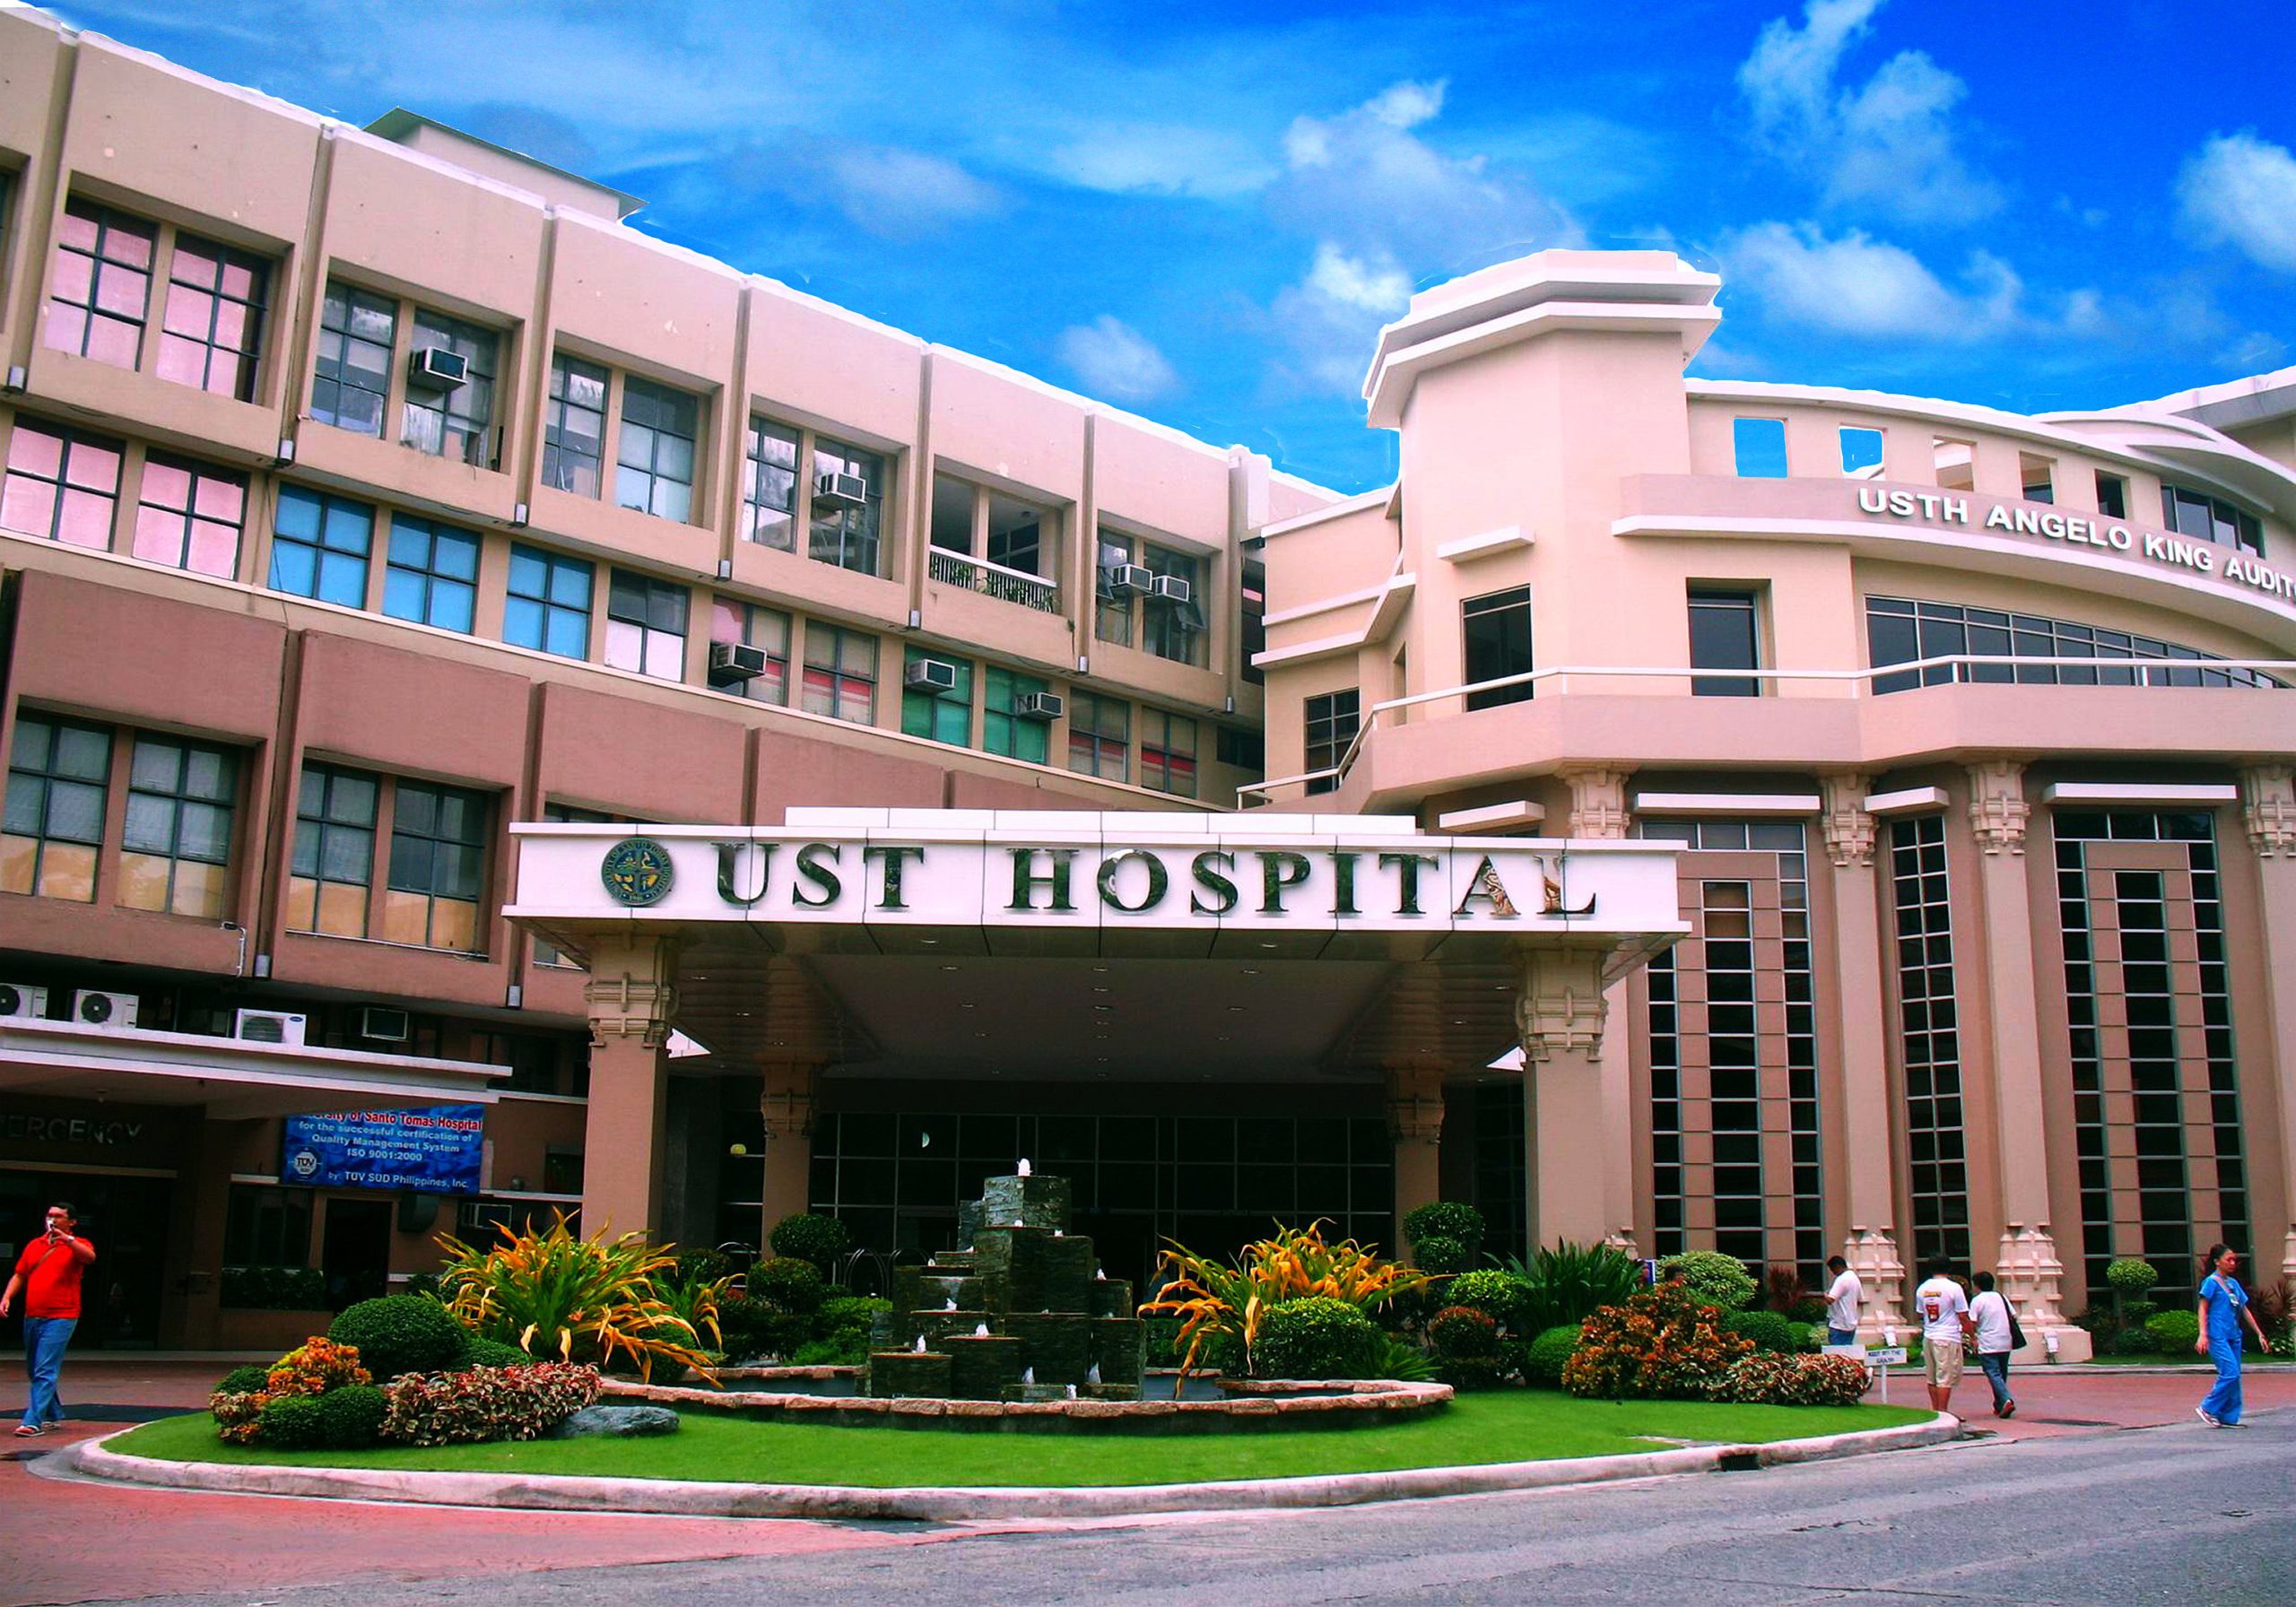 ust hospital1 scaled